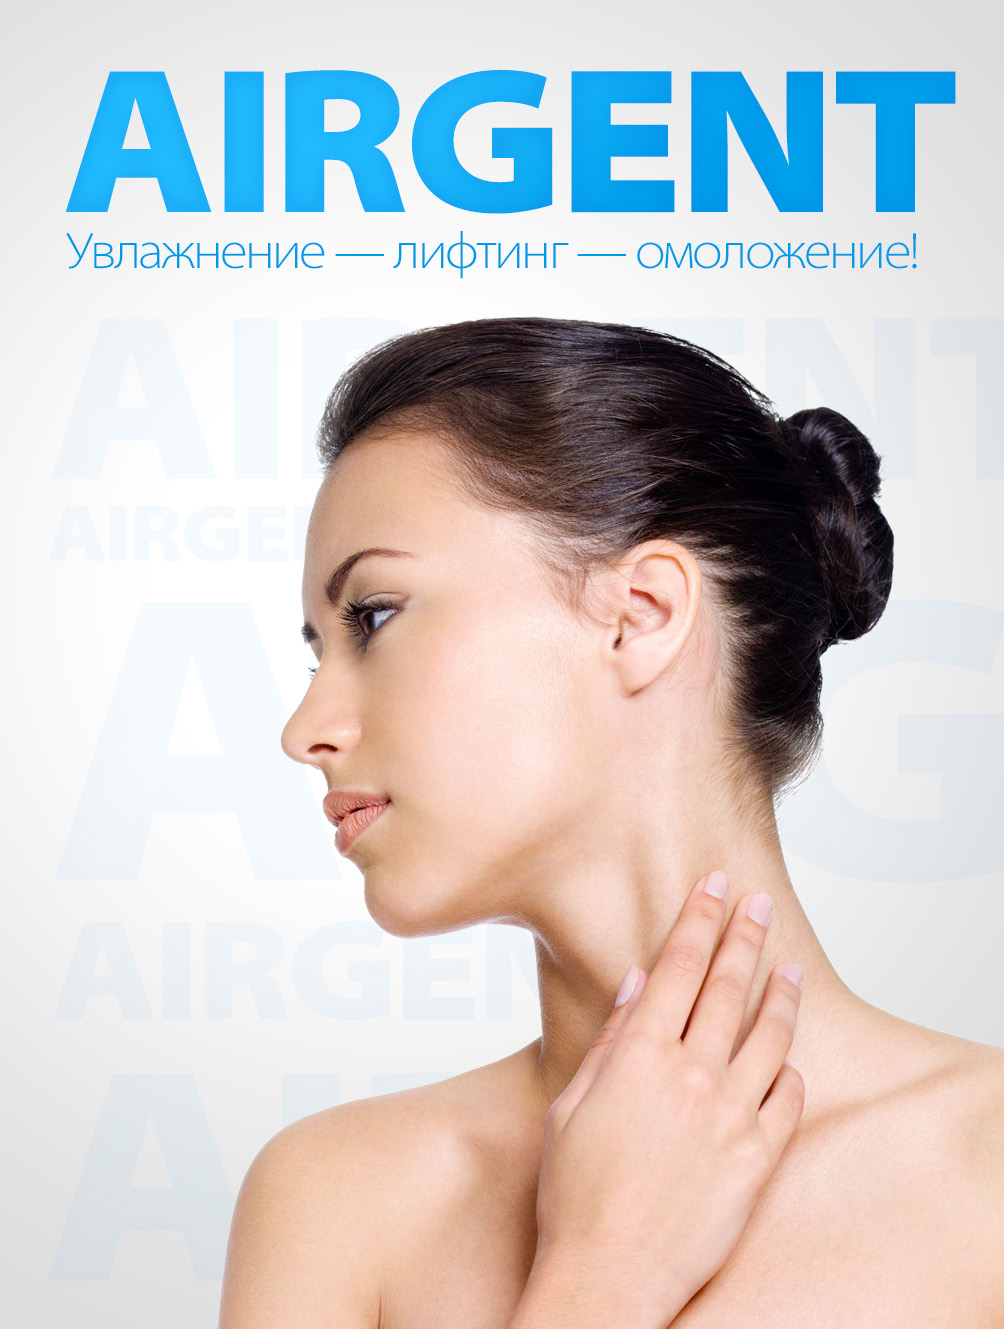 Реклама процедуры Airgent